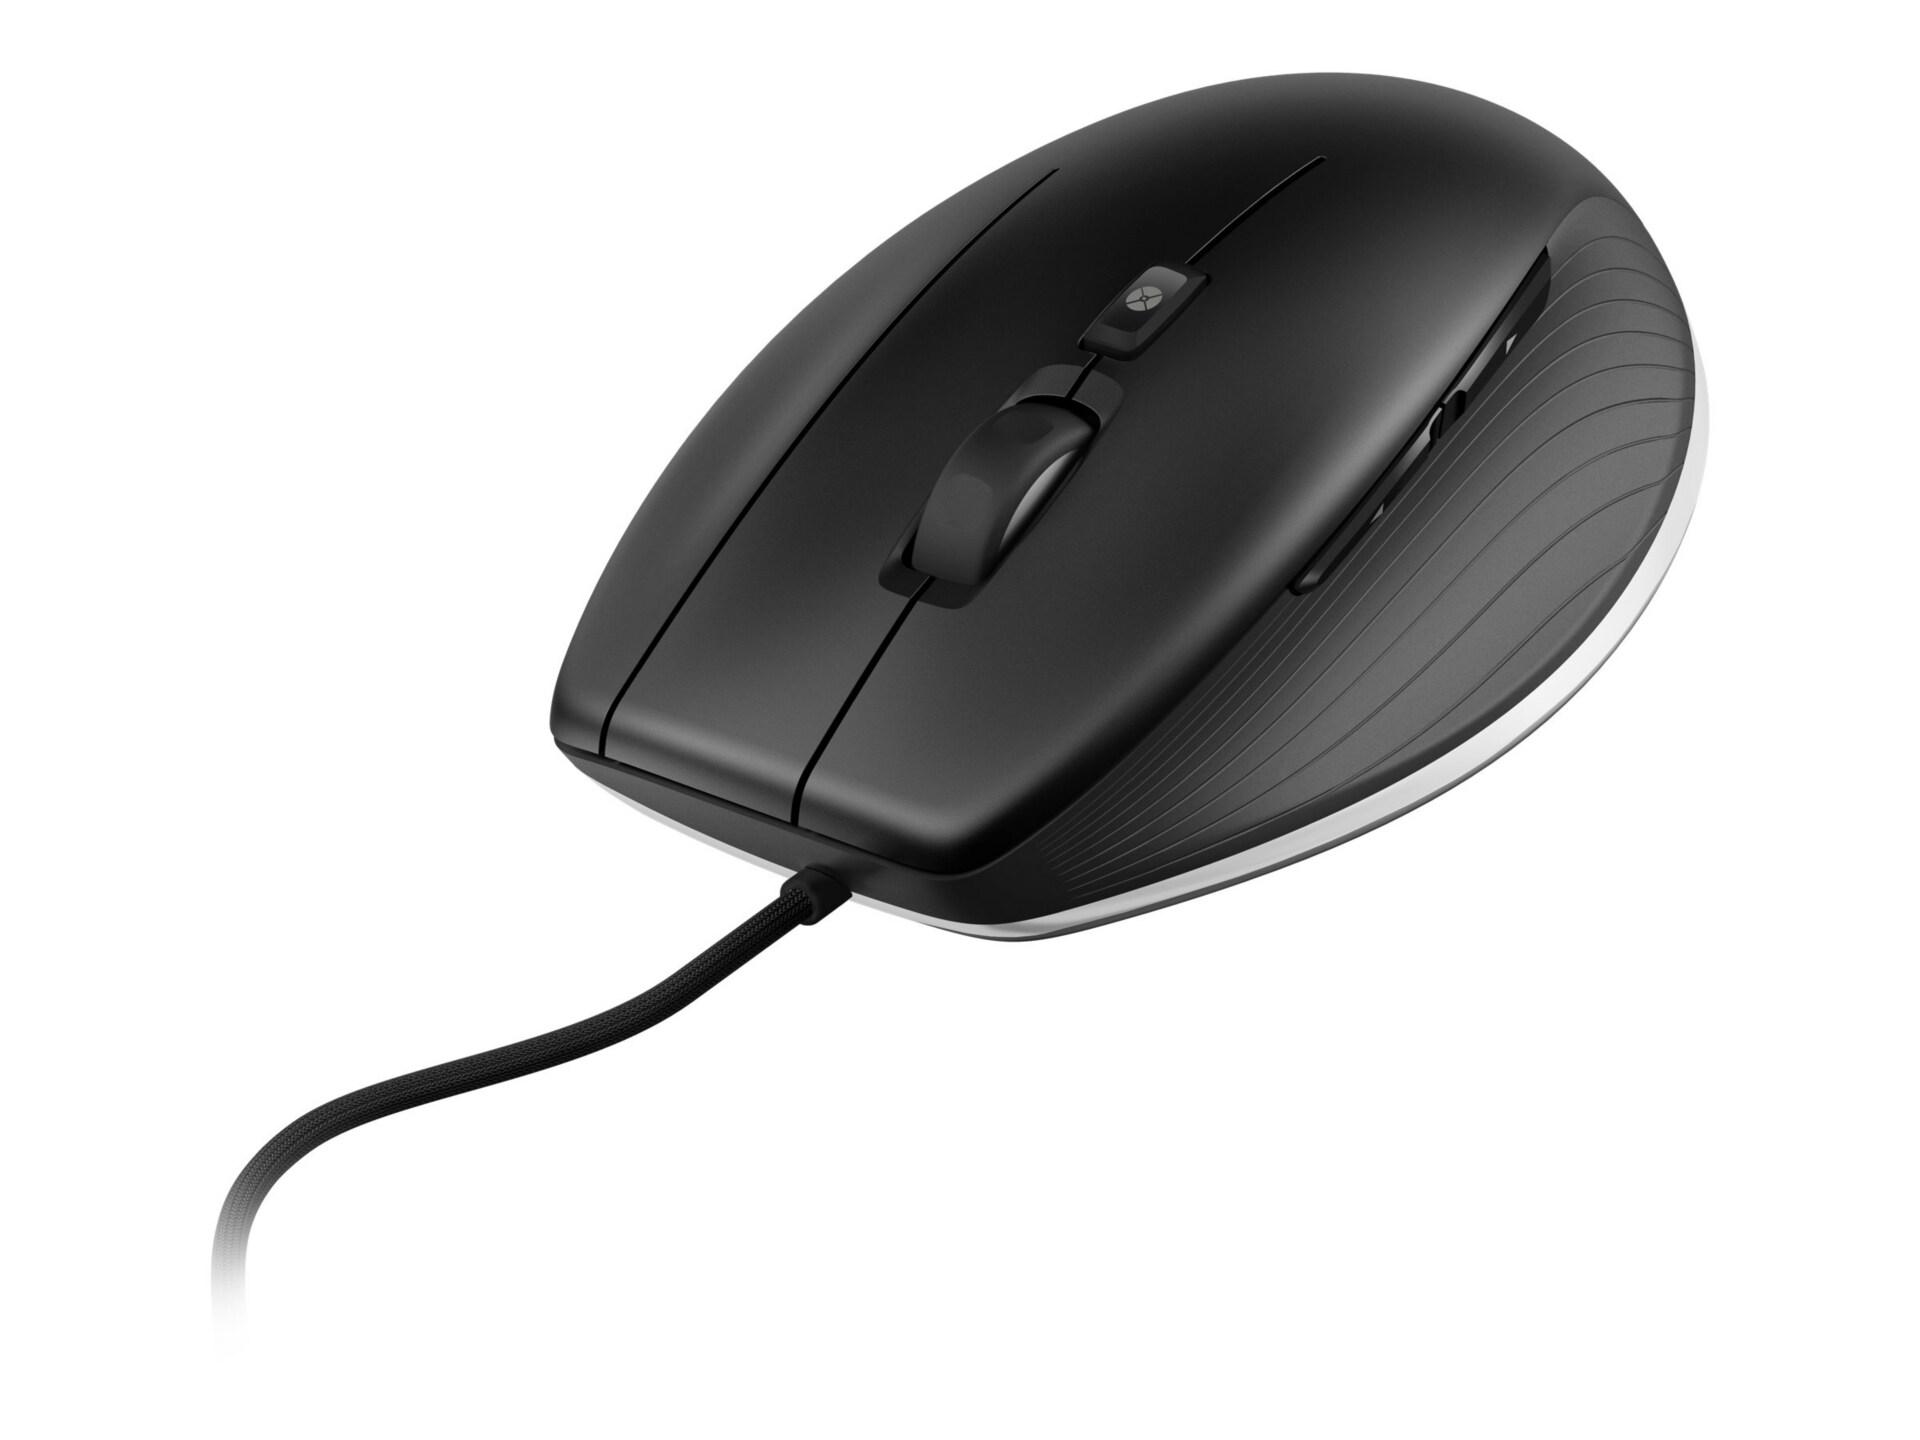 3Dconnexion CadMouse - mouse - USB - matte black, steel